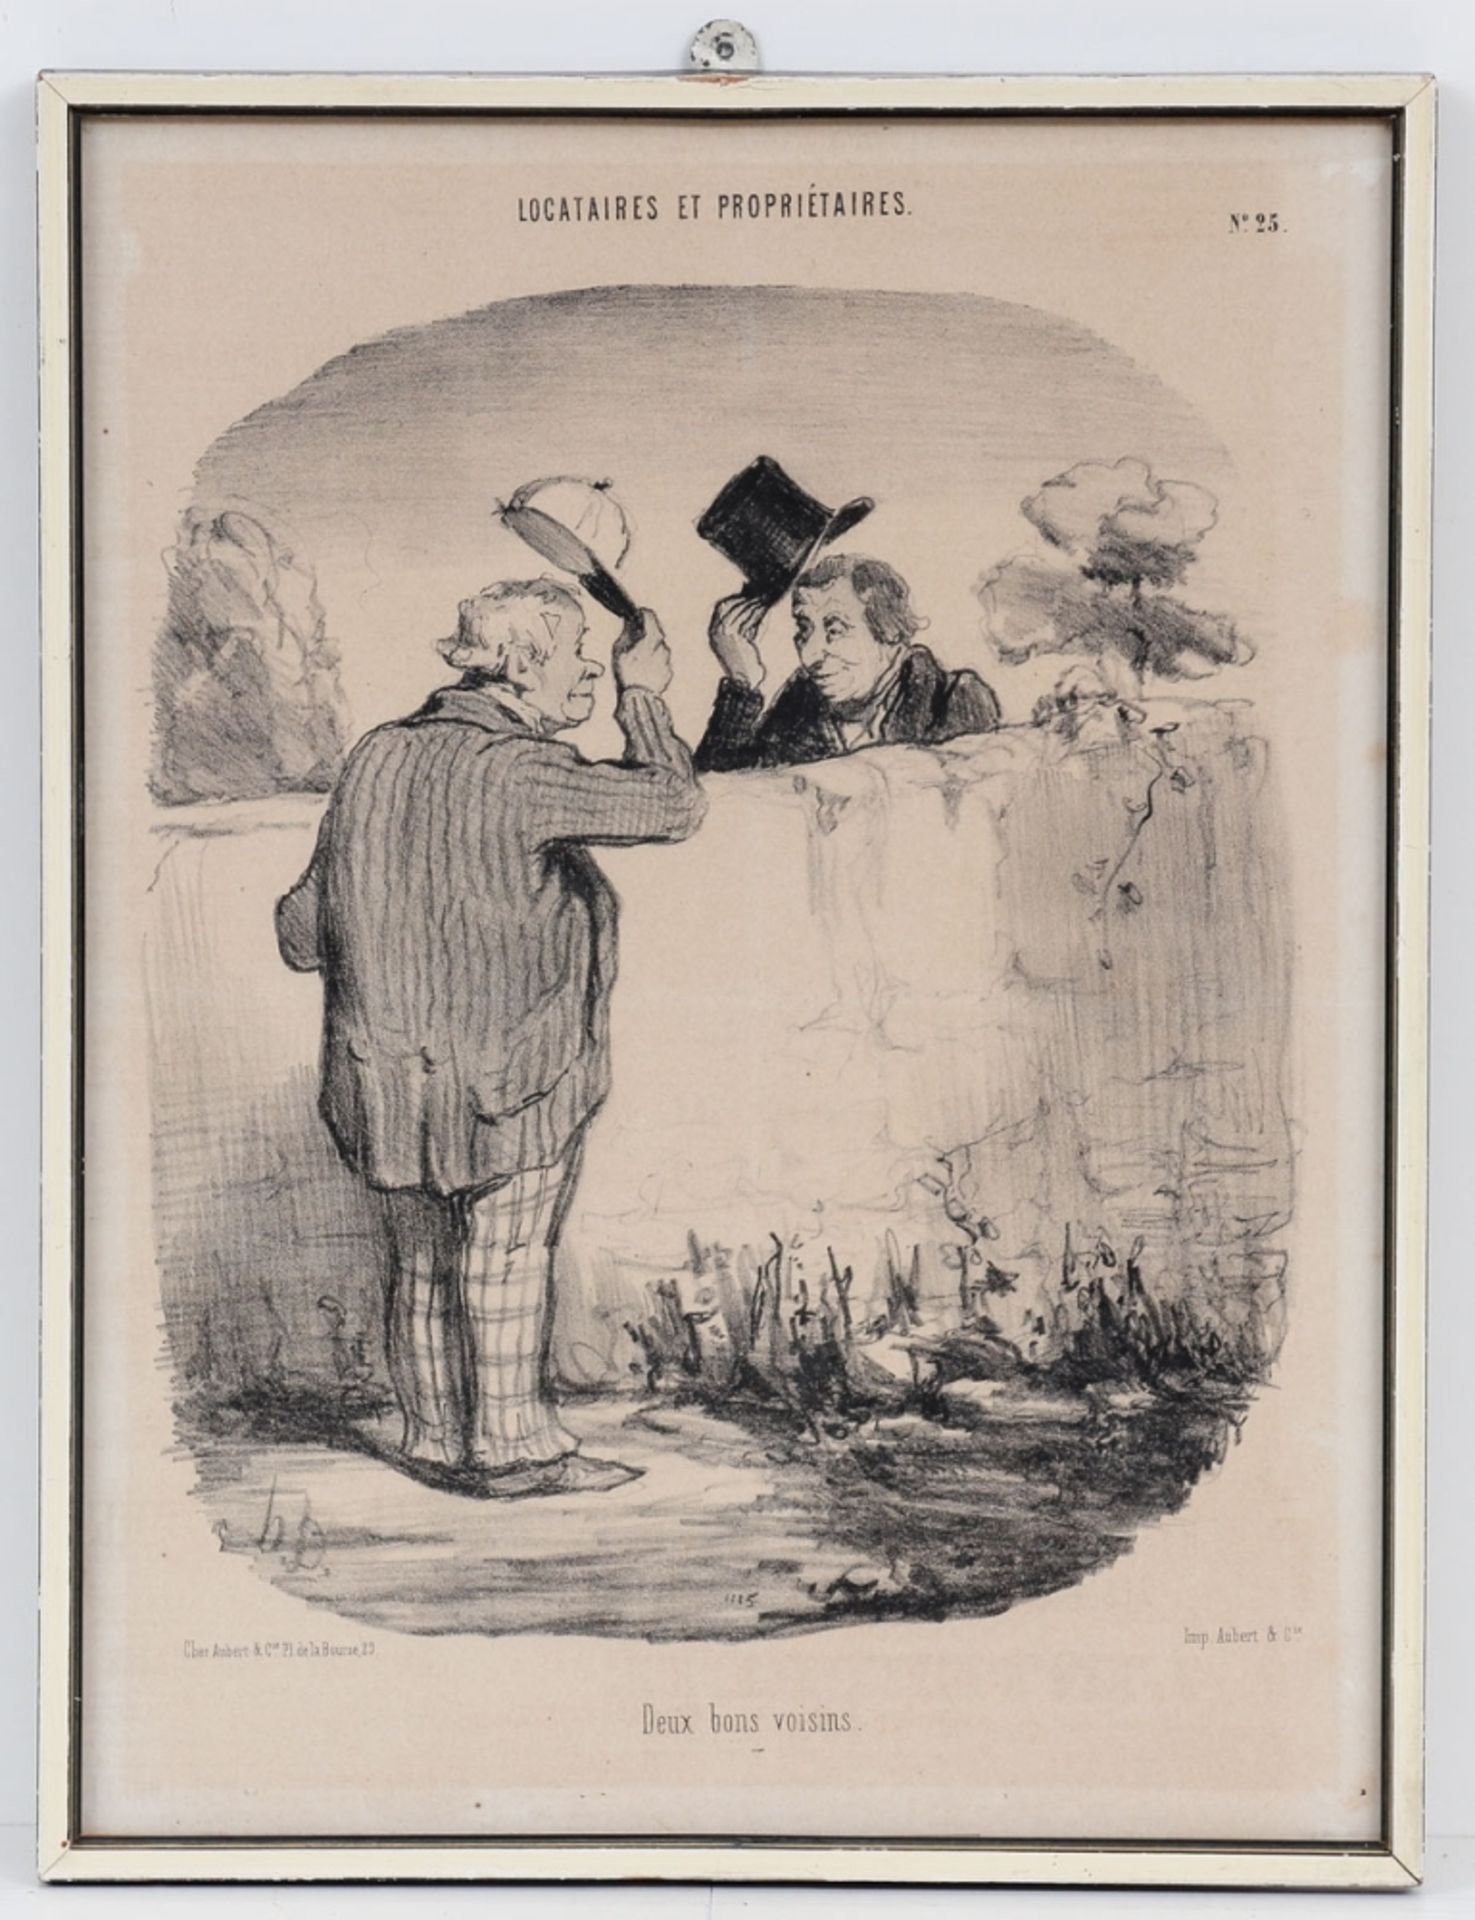 Honoré Daumier 1808 Marseille - 1879 Valmondois - "Deux bons voisins" (Zwei gute Nachbarn, 1 - Image 2 of 2